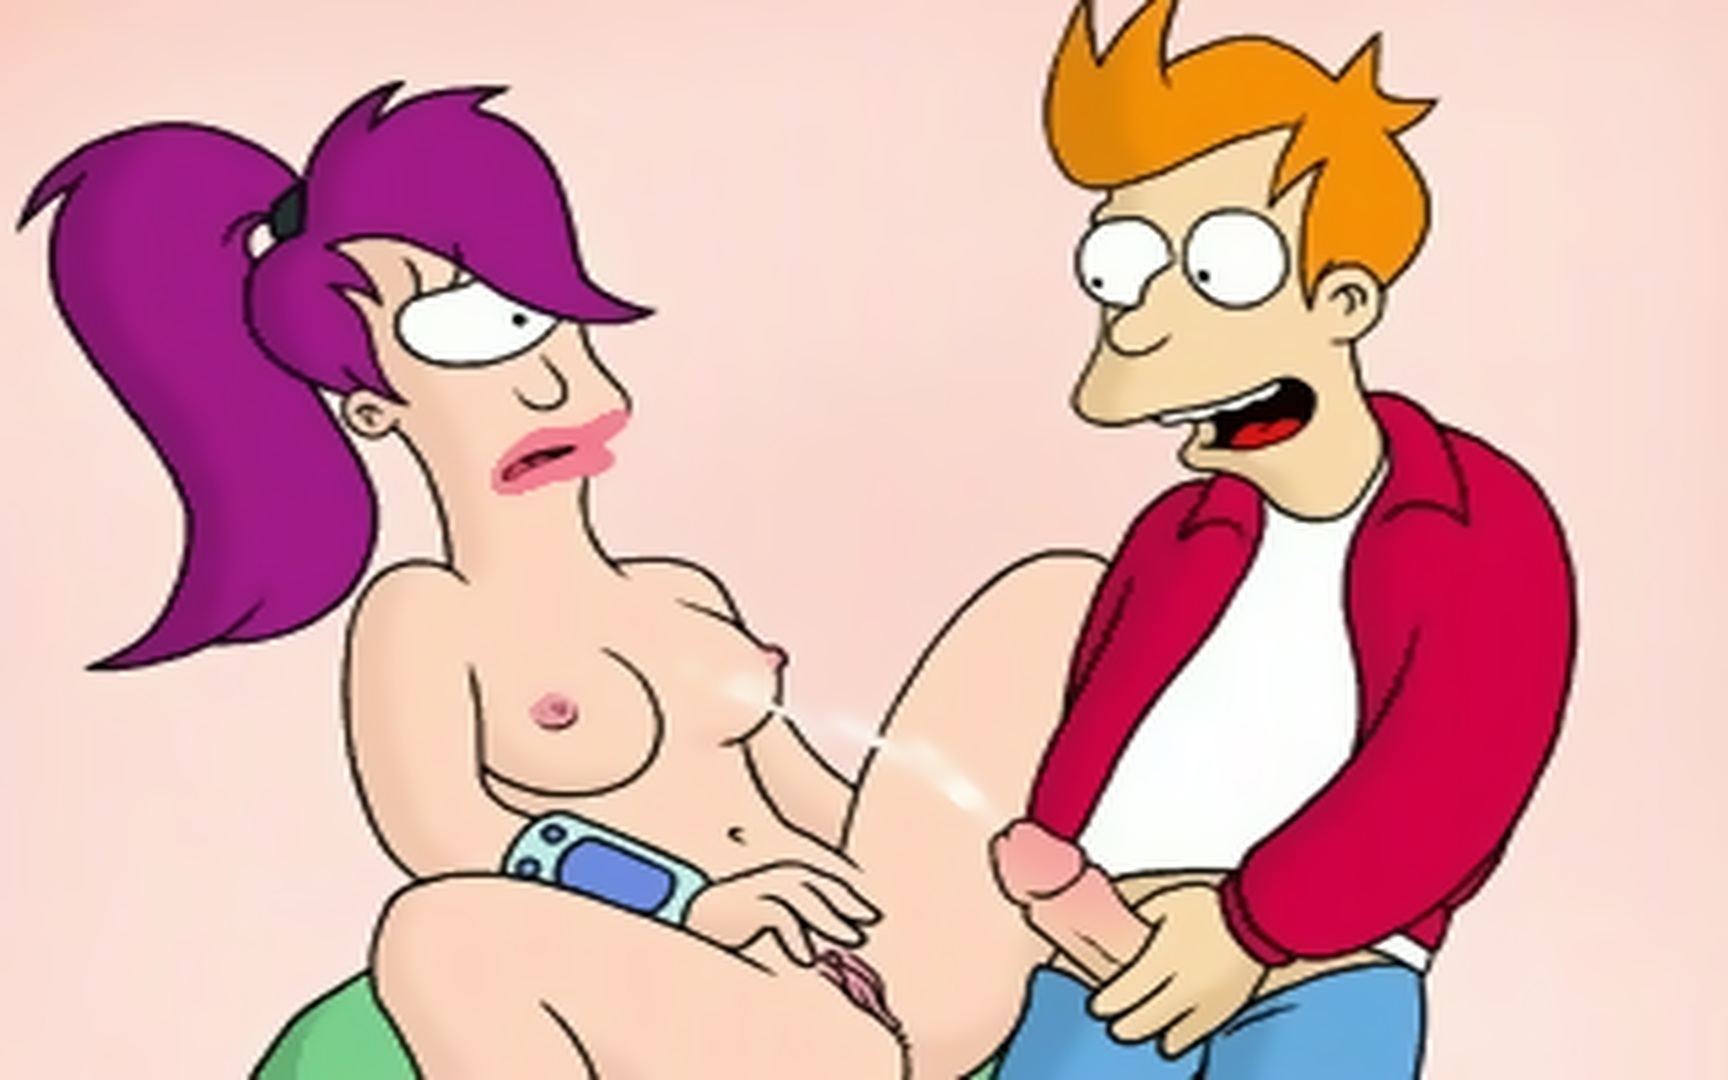 1728px x 1080px - Cartoon porn insanity with Flintstones, American Dad etc